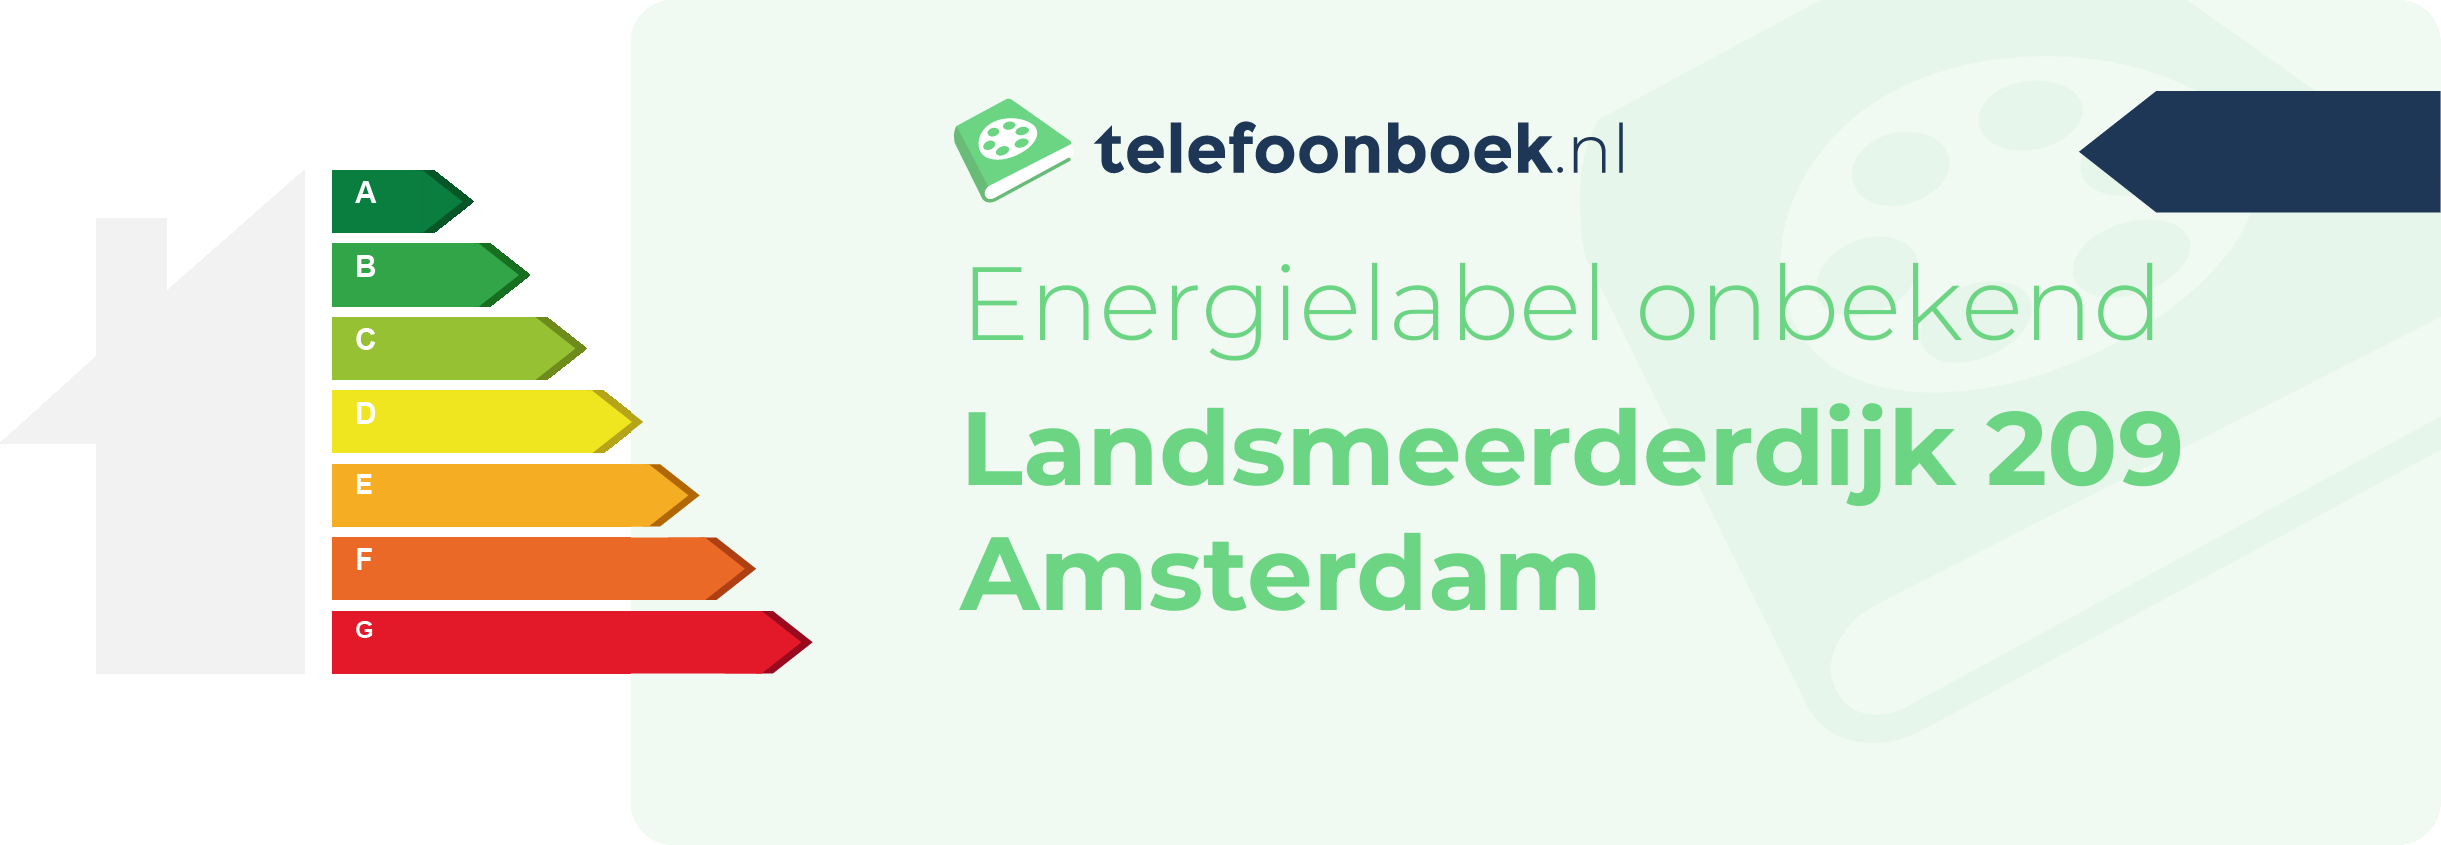 Energielabel Landsmeerderdijk 209 Amsterdam